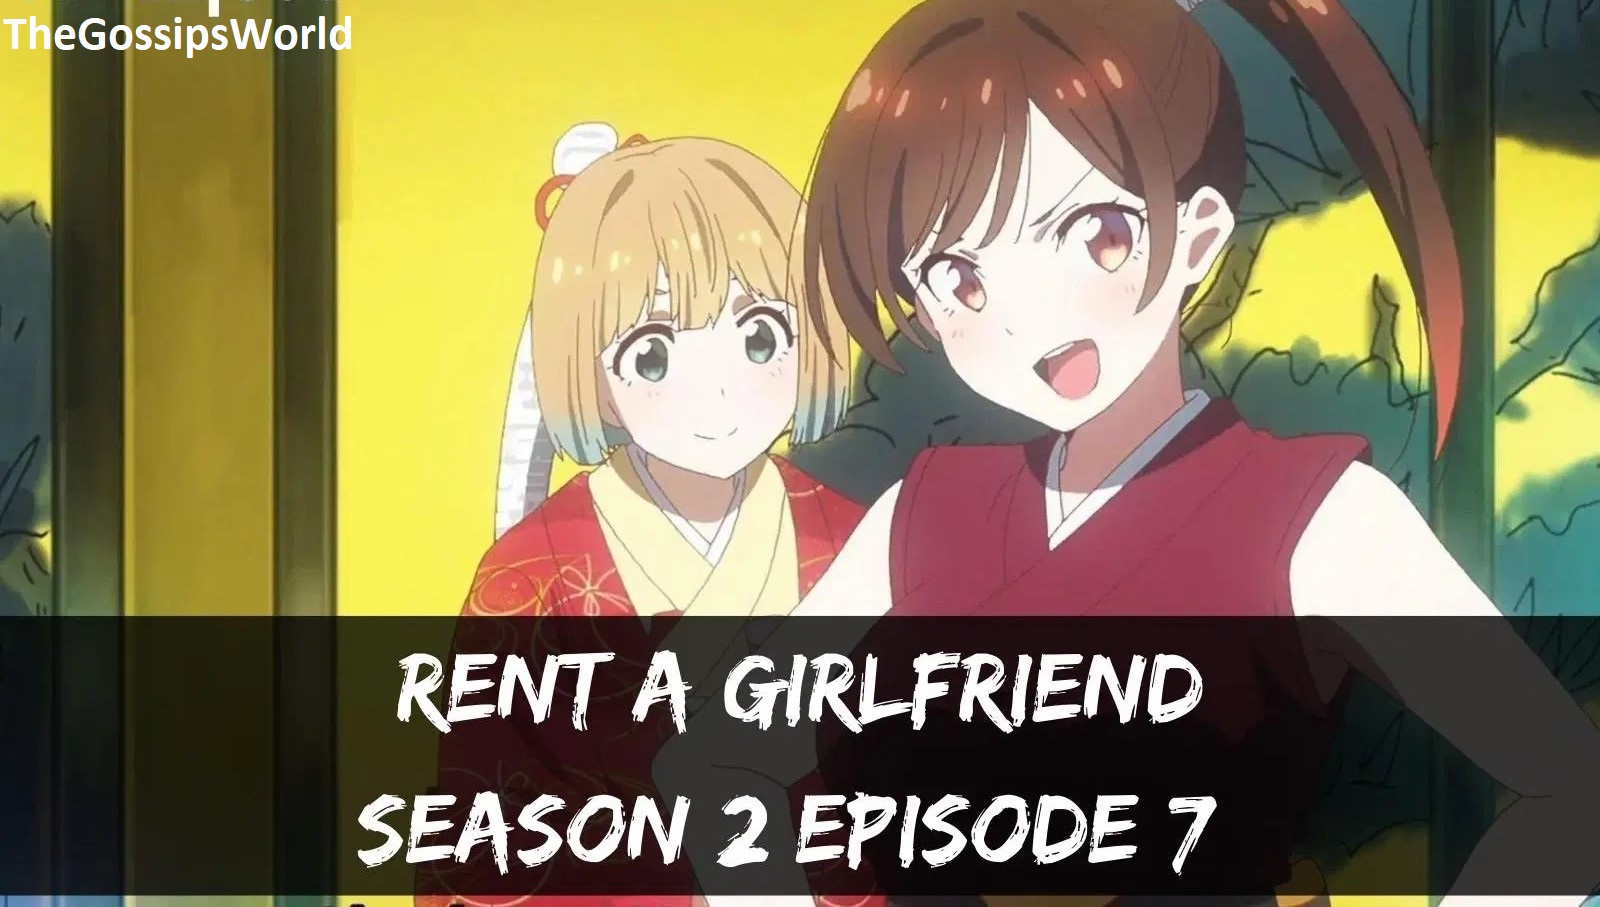 Rent A Girlfriend Season 2 Episode 7 Official Teaser